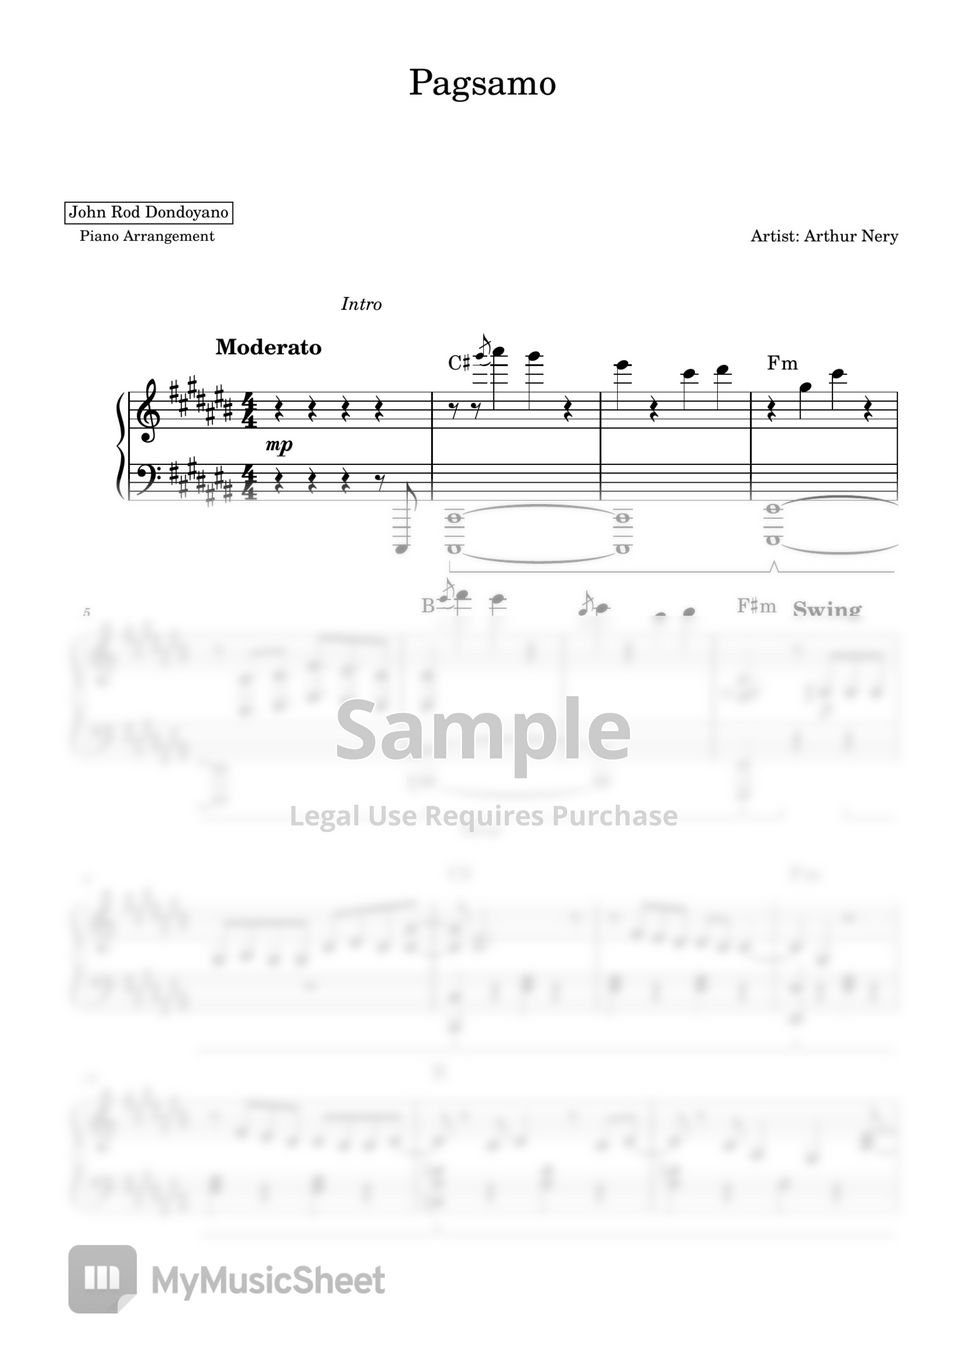 Arthur Nery - Pagsamo (PIANO SHEET) by John Rod Dondoyano